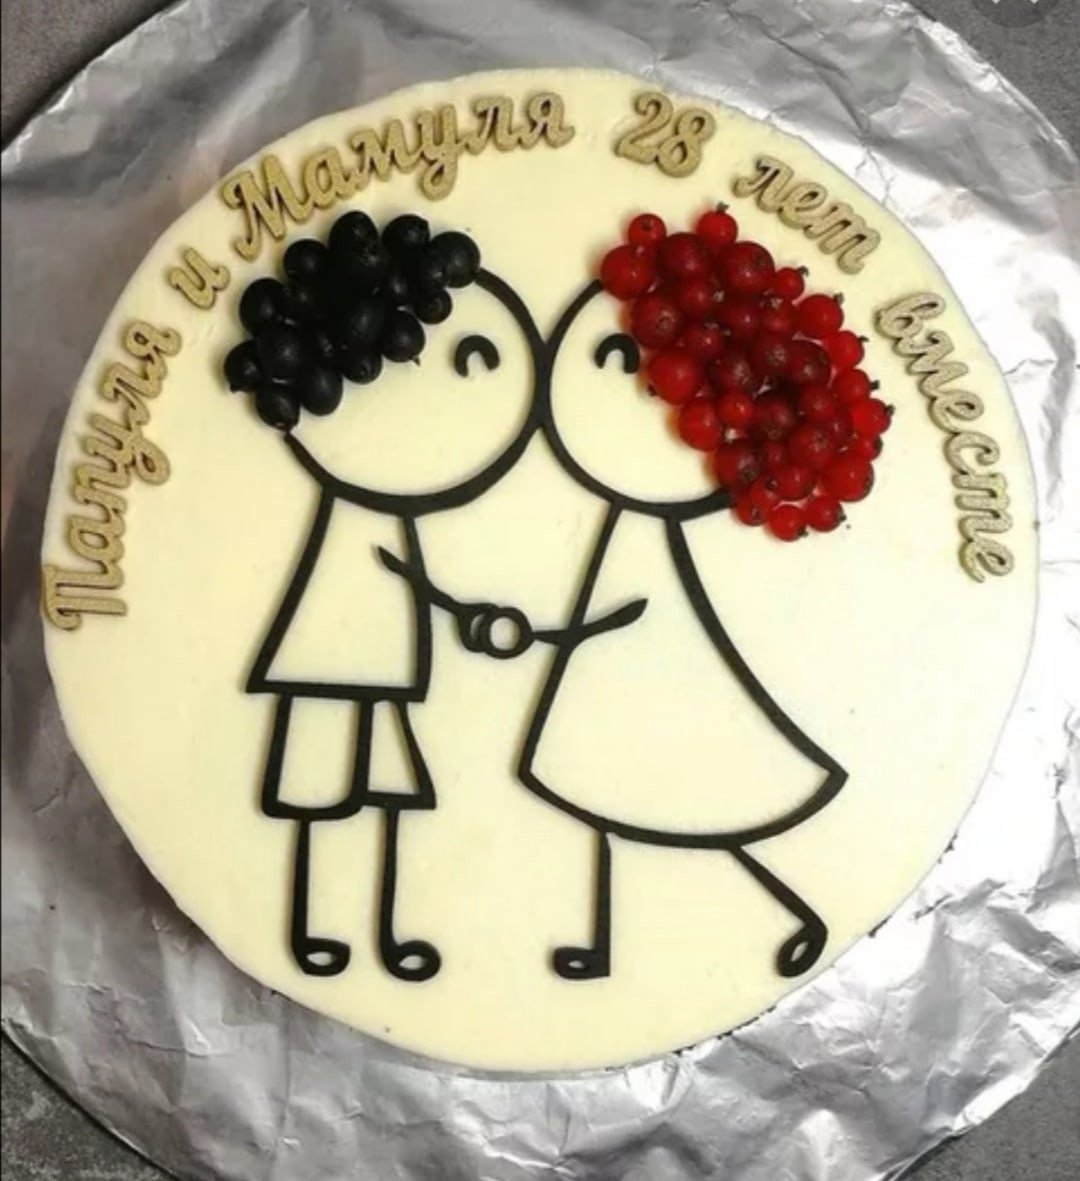 С годовщиной 28 лет. Тортик на годовщину свадьбы. Красивый торт на годовщину свадьбы. Забавные торты на годовщину свадьбы. С годовщиной свадьбы 28 лет.